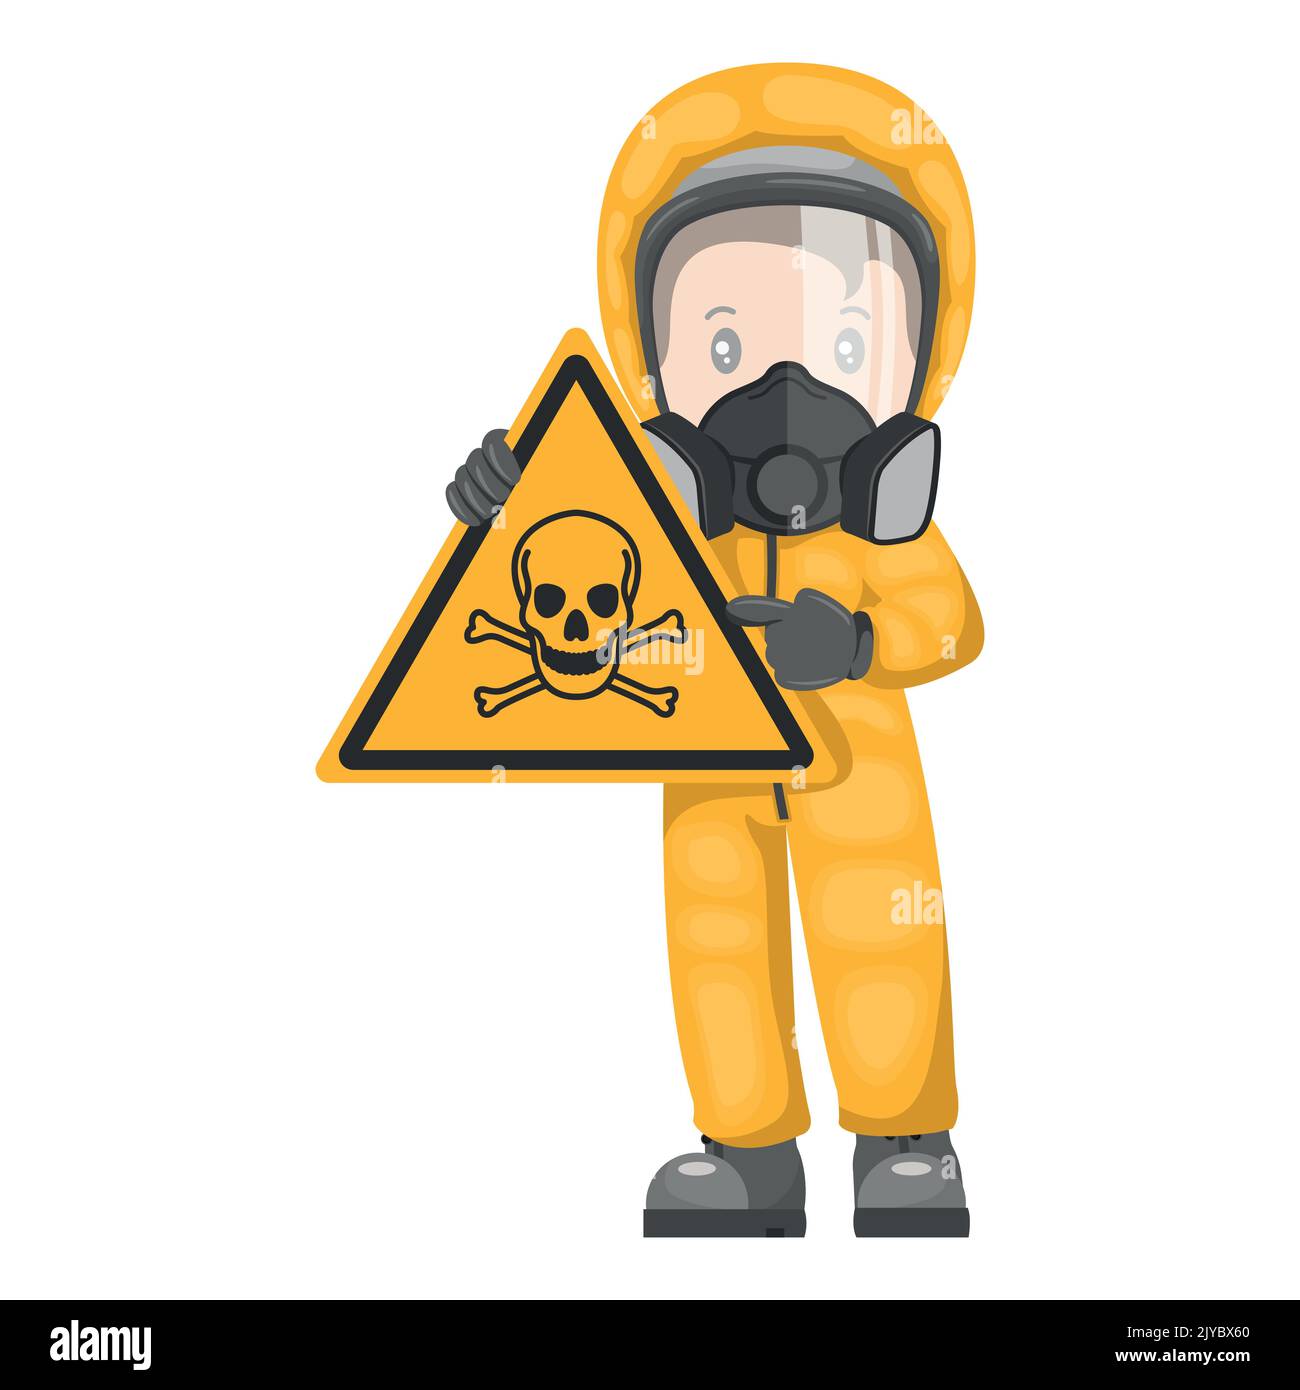 Industriearbeiter mit Warnschild für giftige Stoffe. Warnsymbol für gefährliche Chemikalien und Piktogramm. Schutzkleidung und Atemschutzmasken. Industrie Stock Vektor